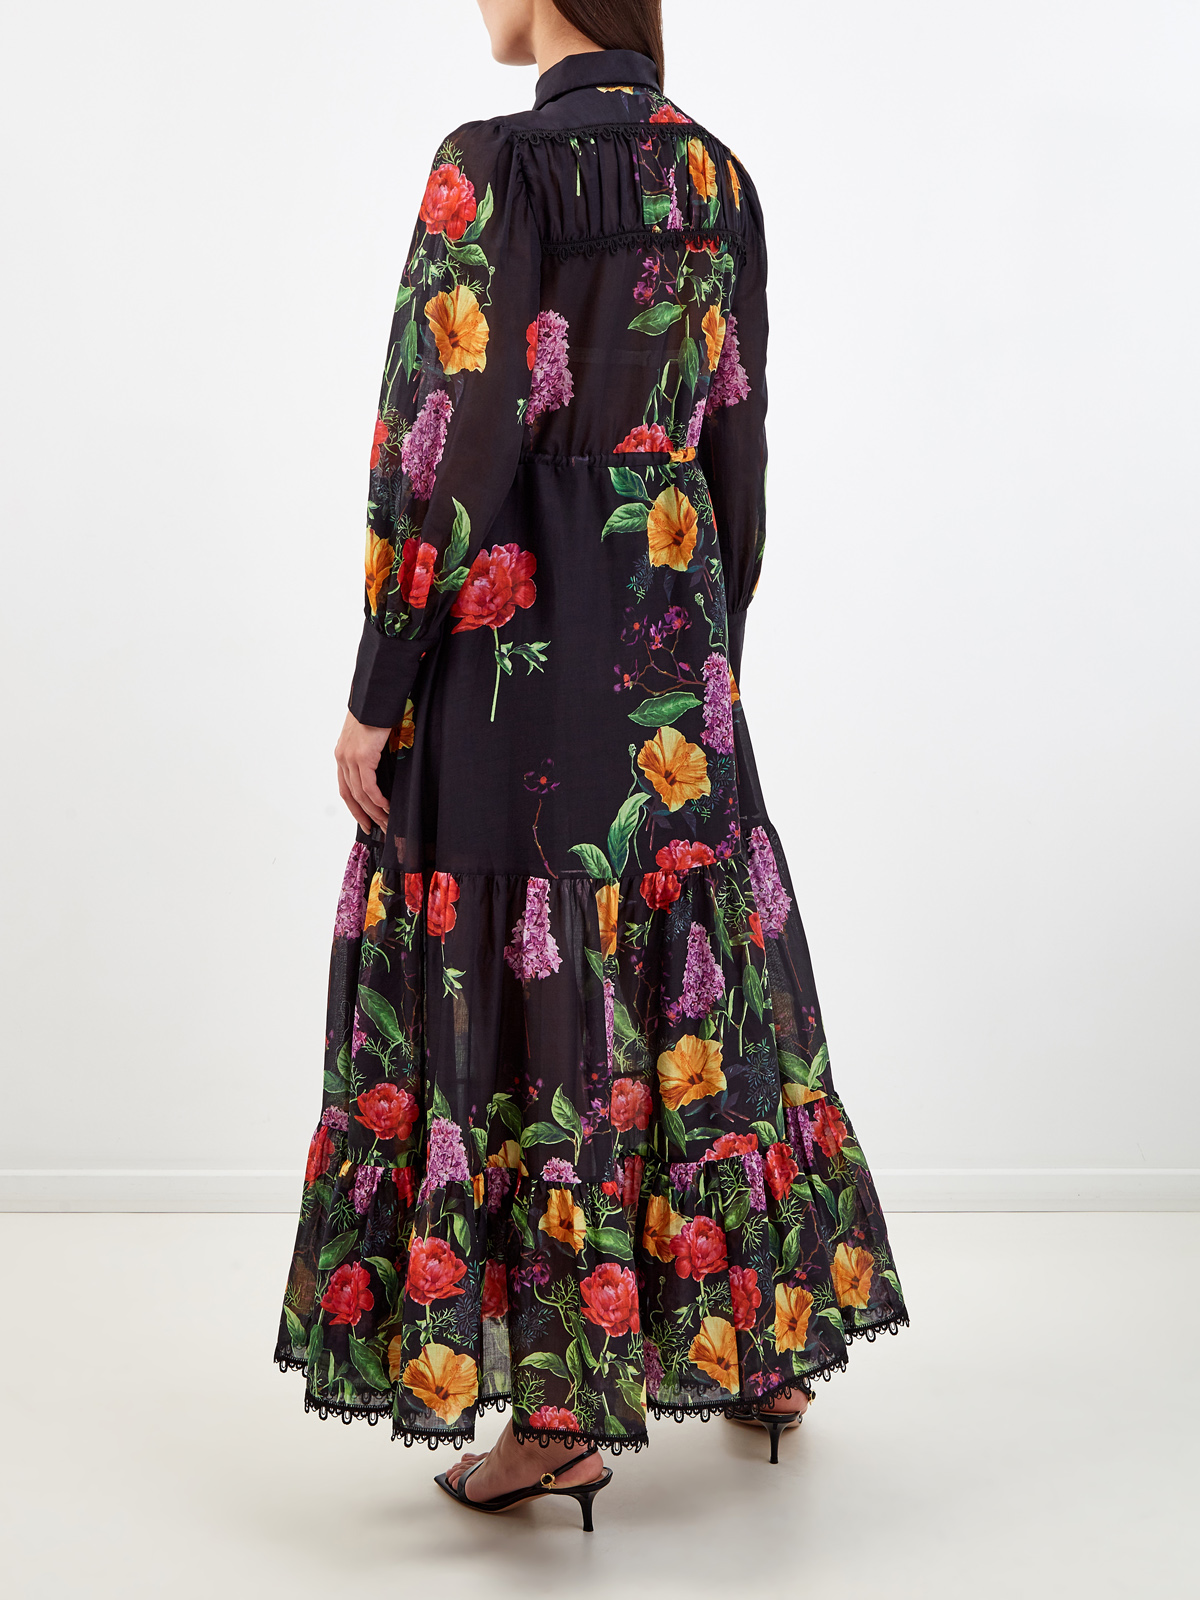 Хлопковое платье Lotus с цветочным принтом ручной работы CHARO RUIZ IBIZA, размер S;L;XL - фото 4